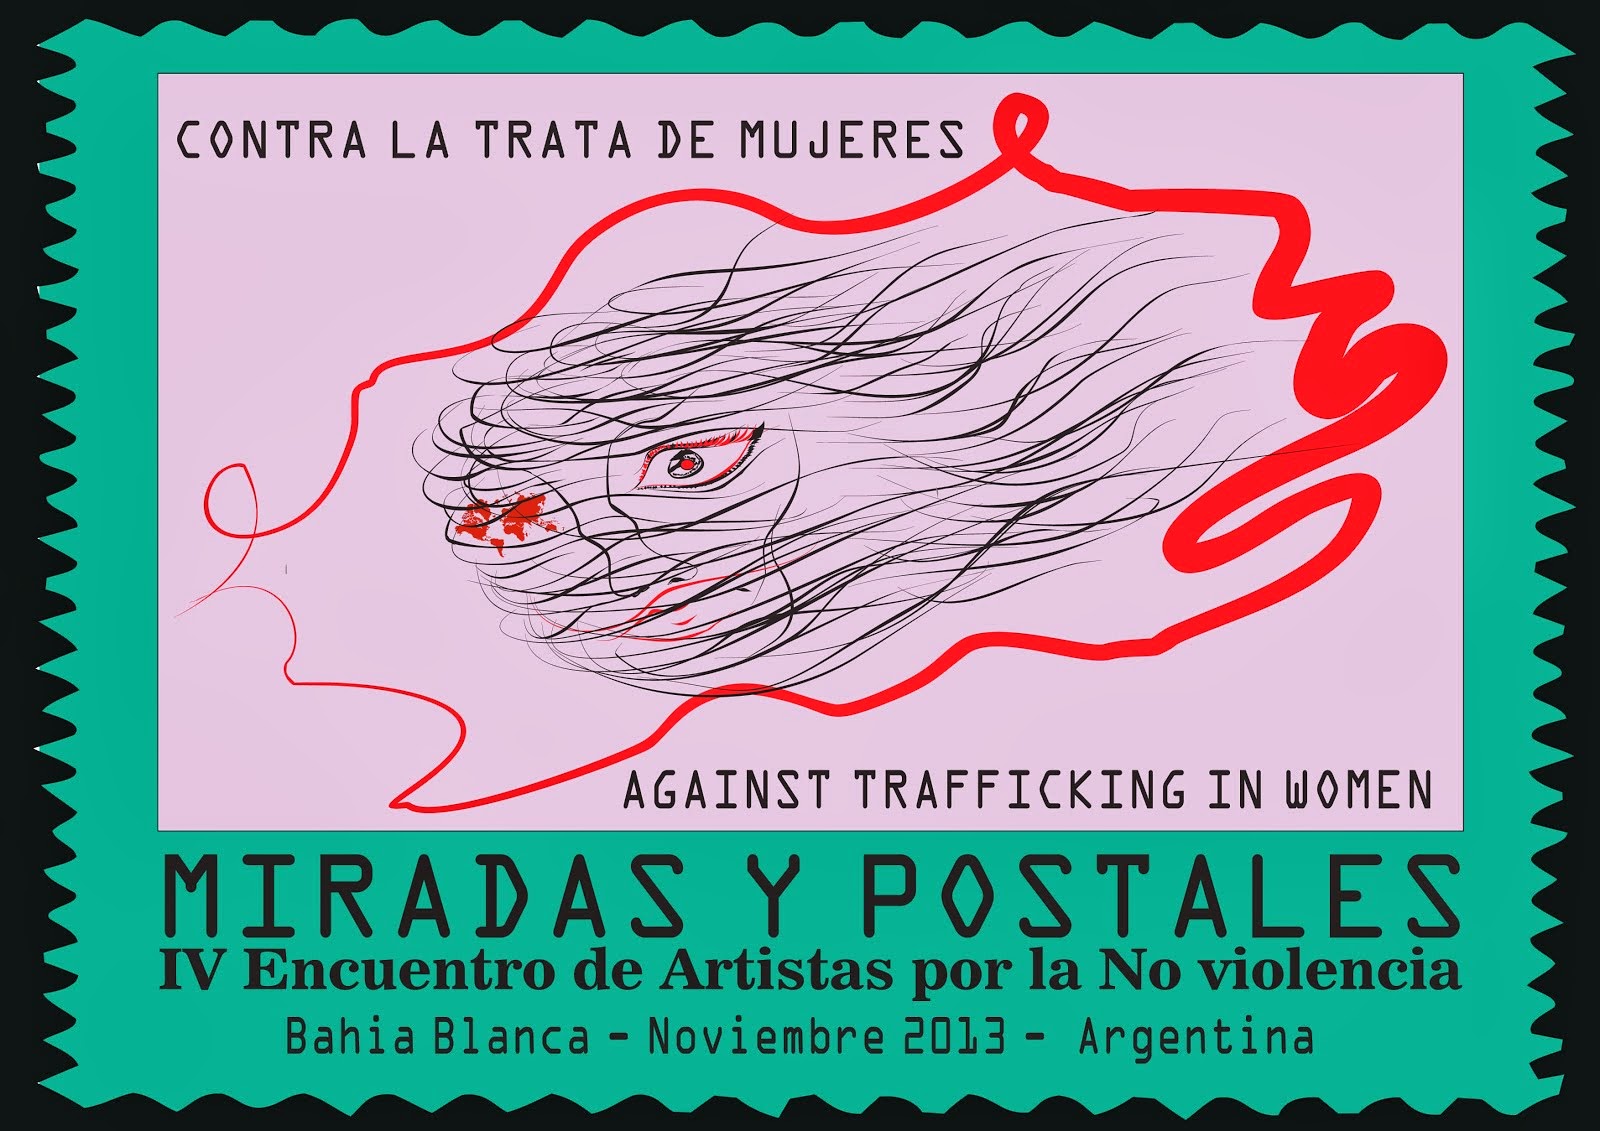 MIRADAS   Y    POSTALES    2013 - CONTRA LA TRATA DE MUJERES Y NIÑ@S  -Against trafficking in Women